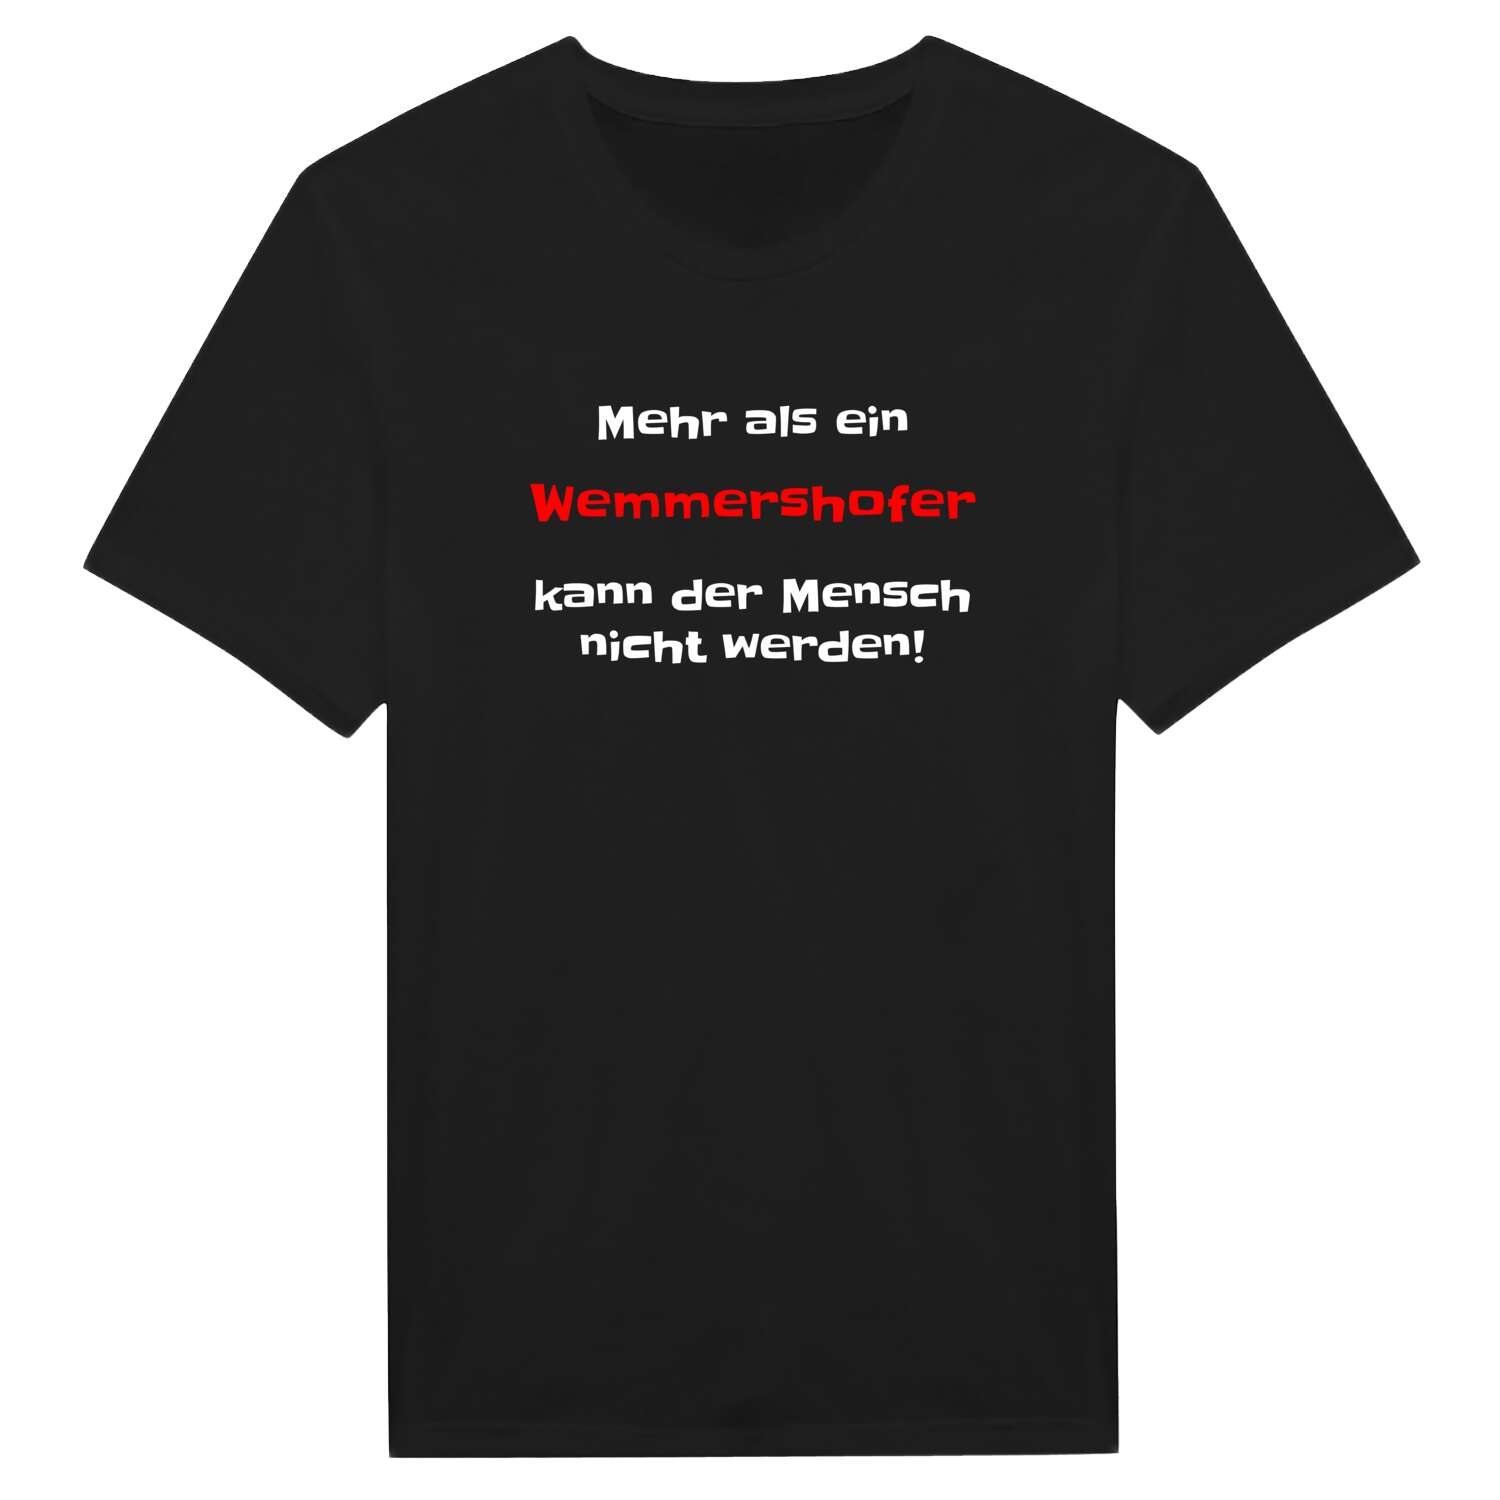 Wemmershof T-Shirt »Mehr als ein«